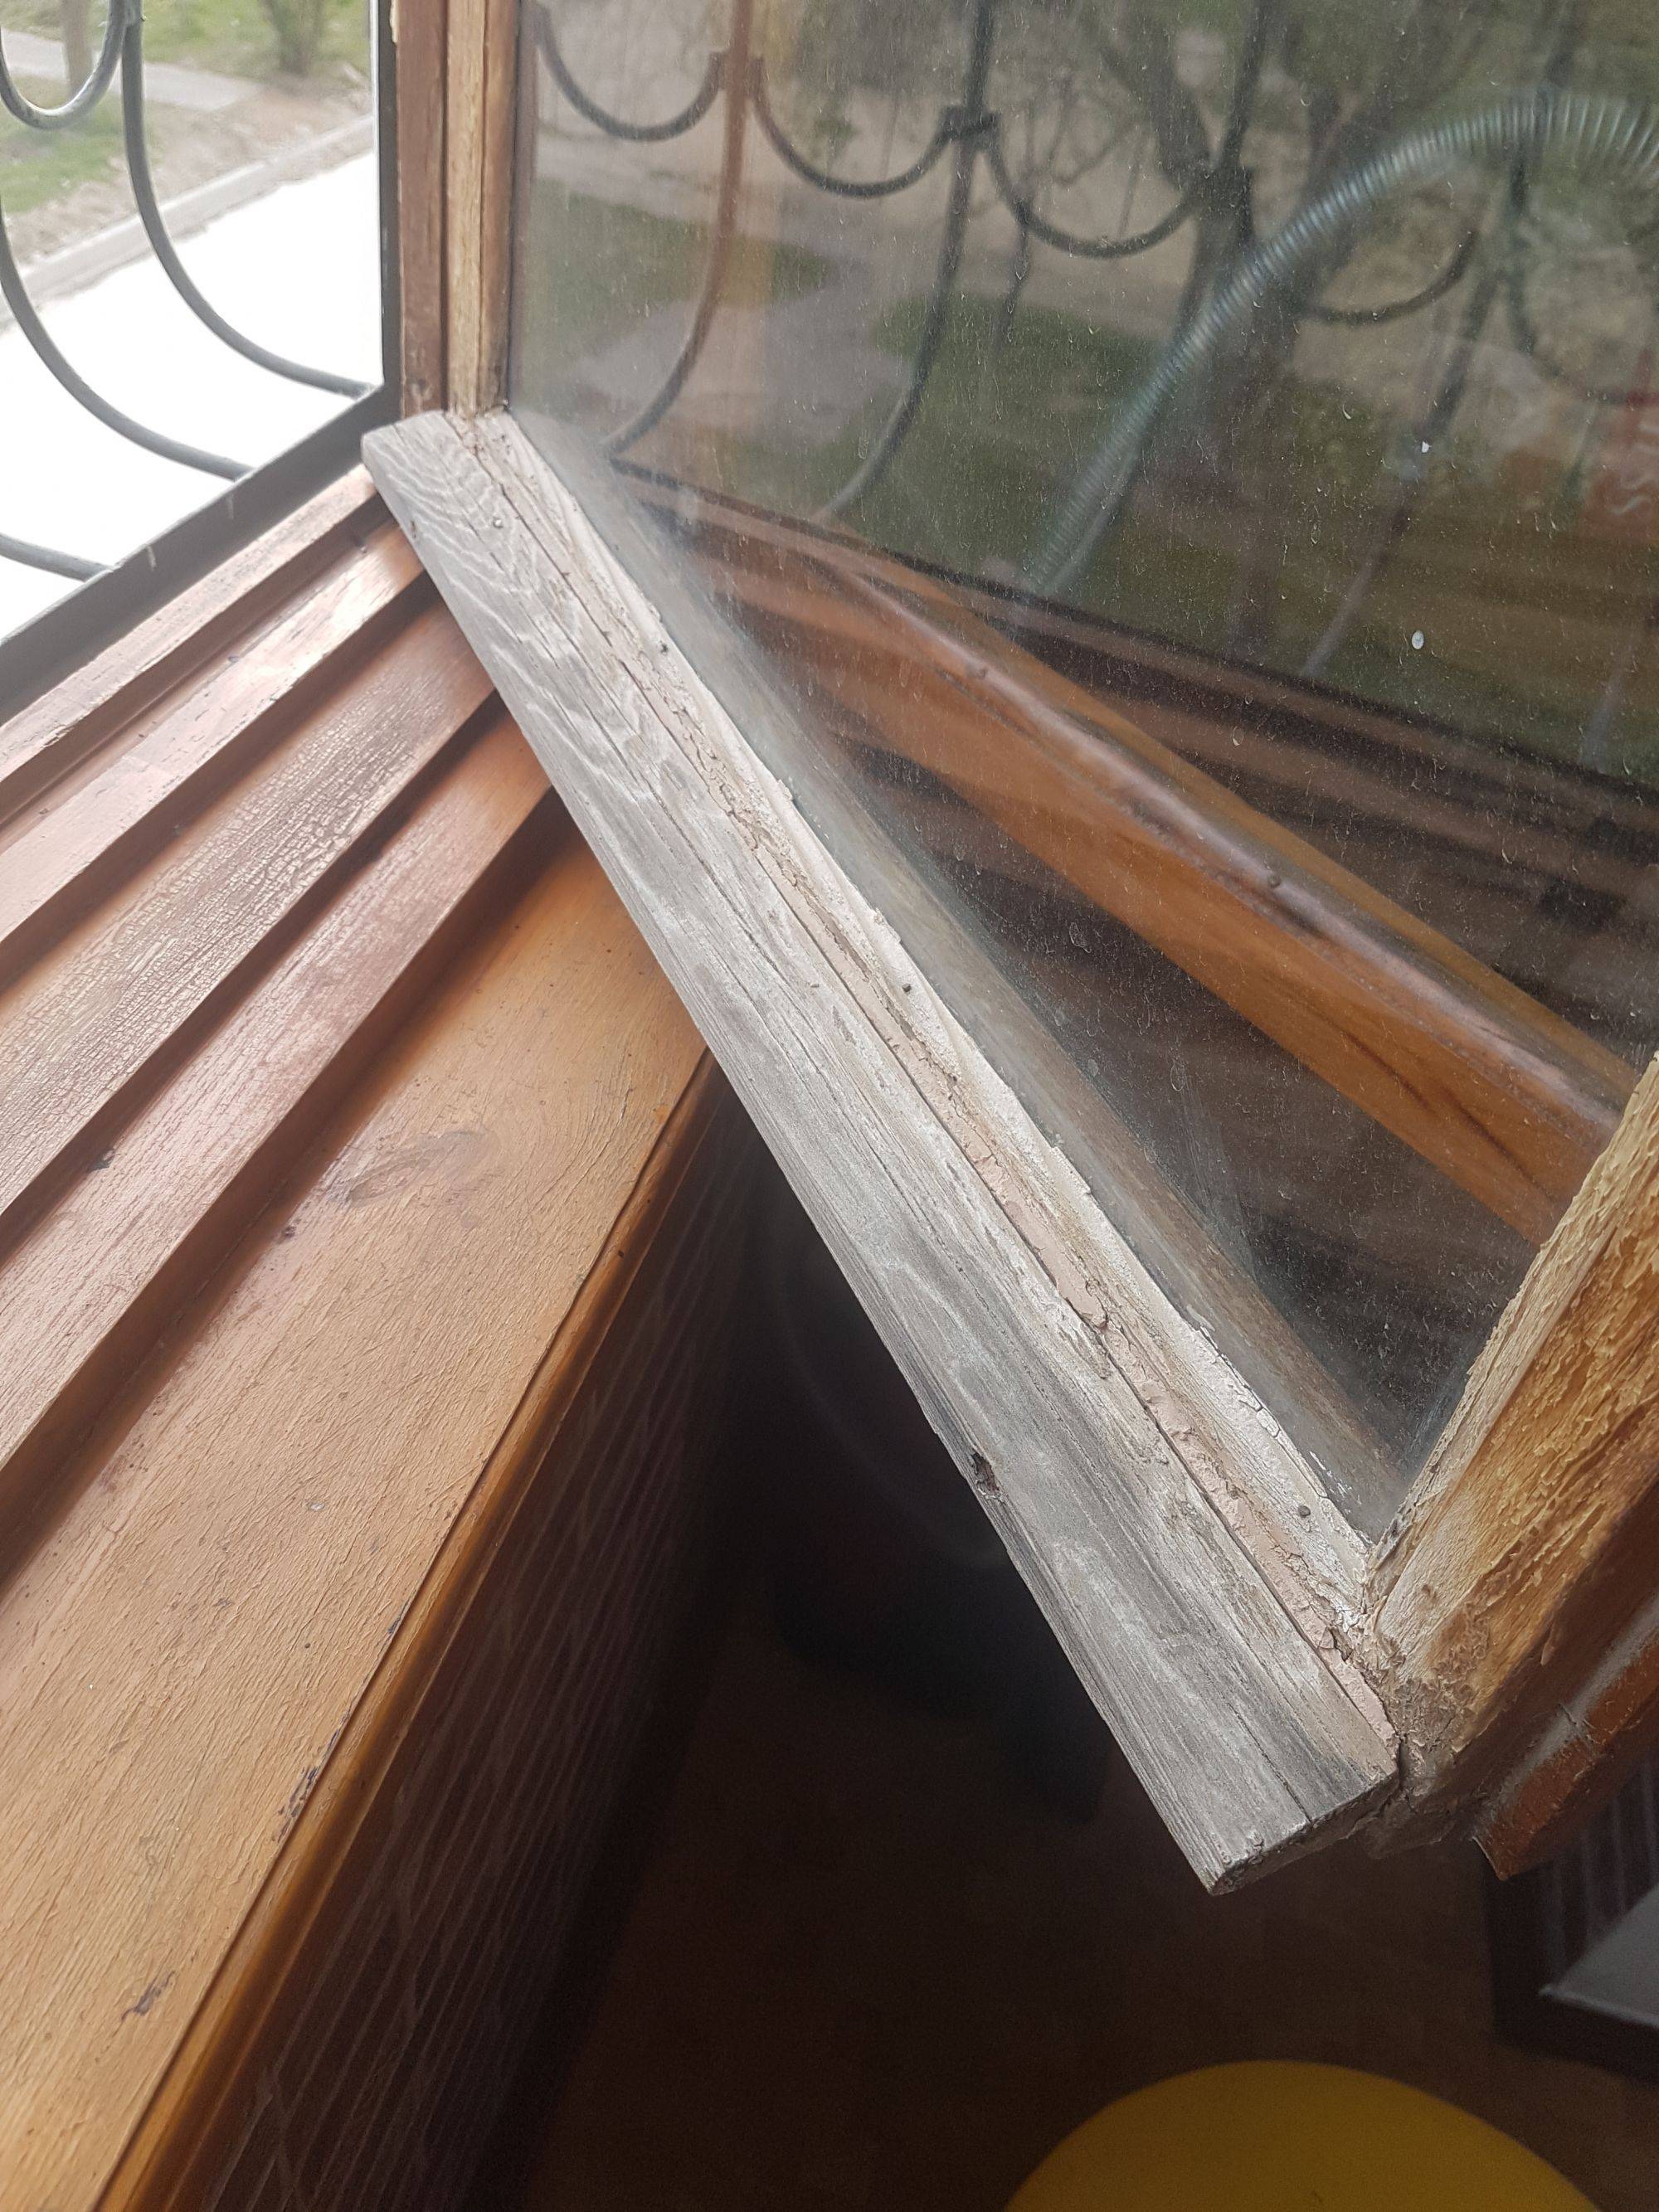 Реставрация деревянных окон: технологии, отзывы. ремонт старых деревянных окон